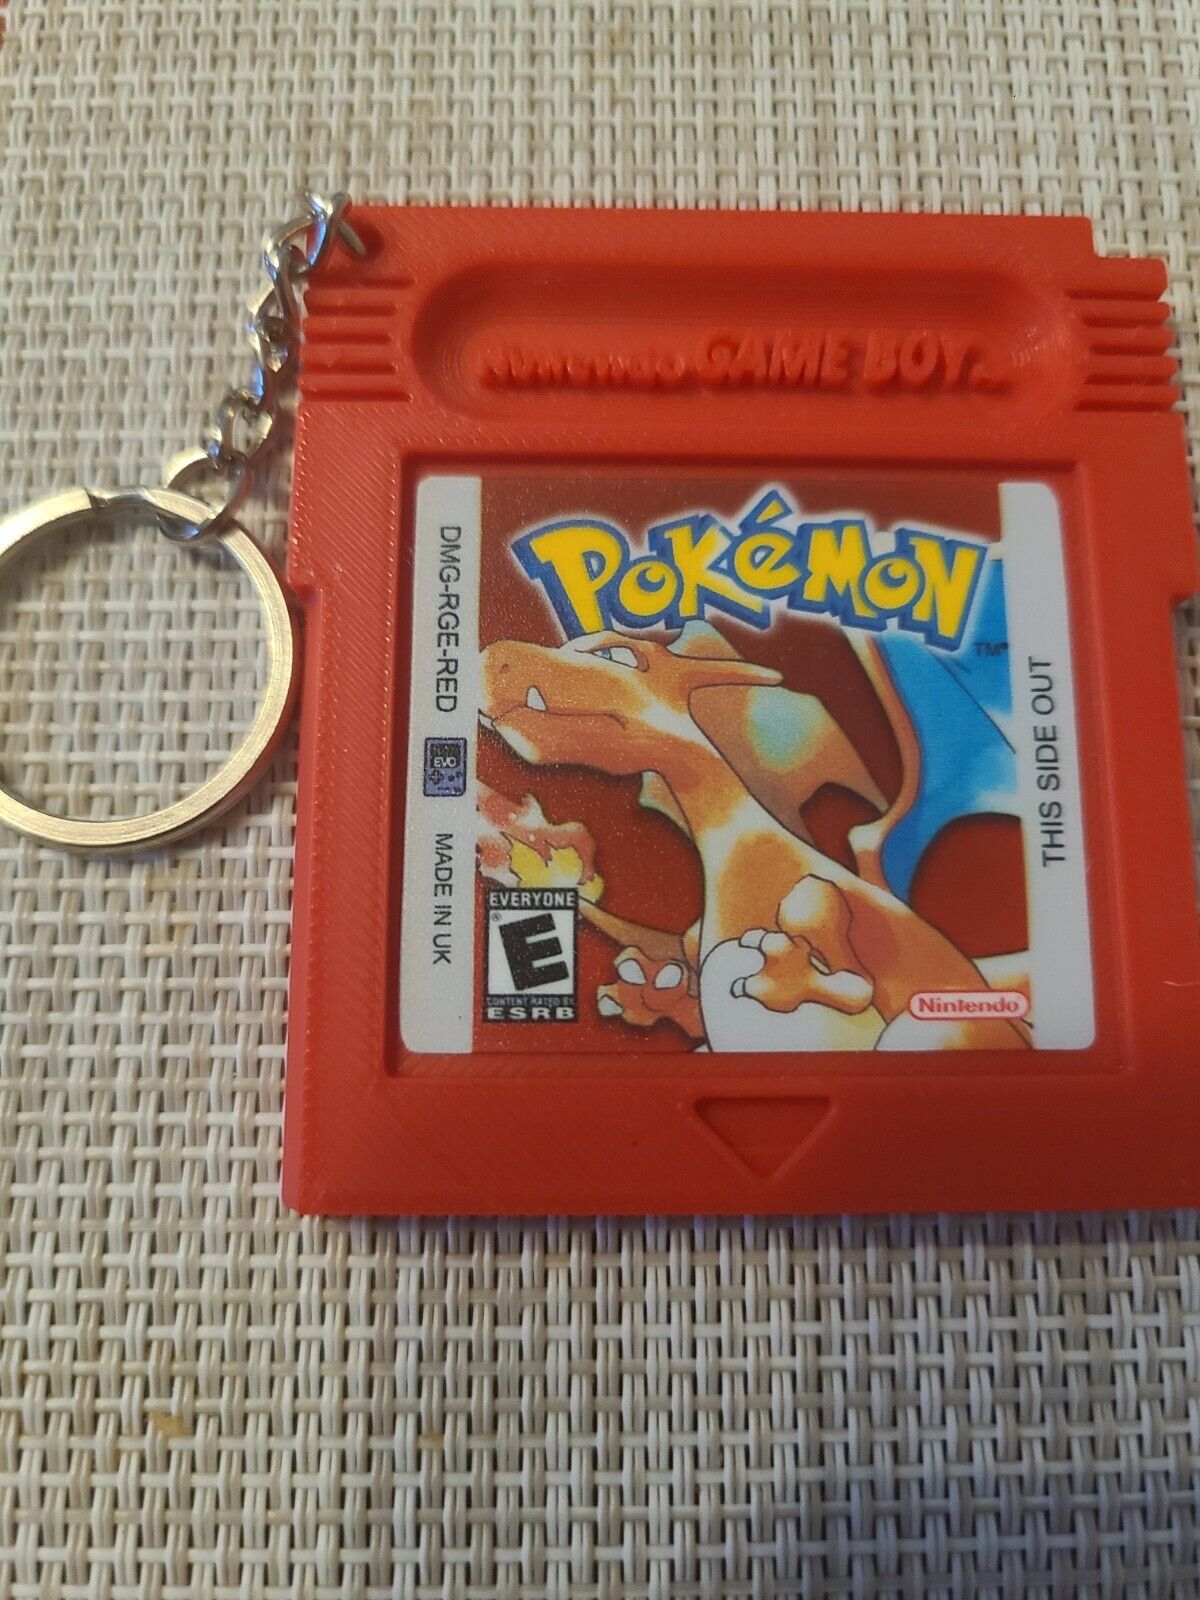 Pokémon Red Charizard keychain Gameboy Nintendo cartridge retro anime